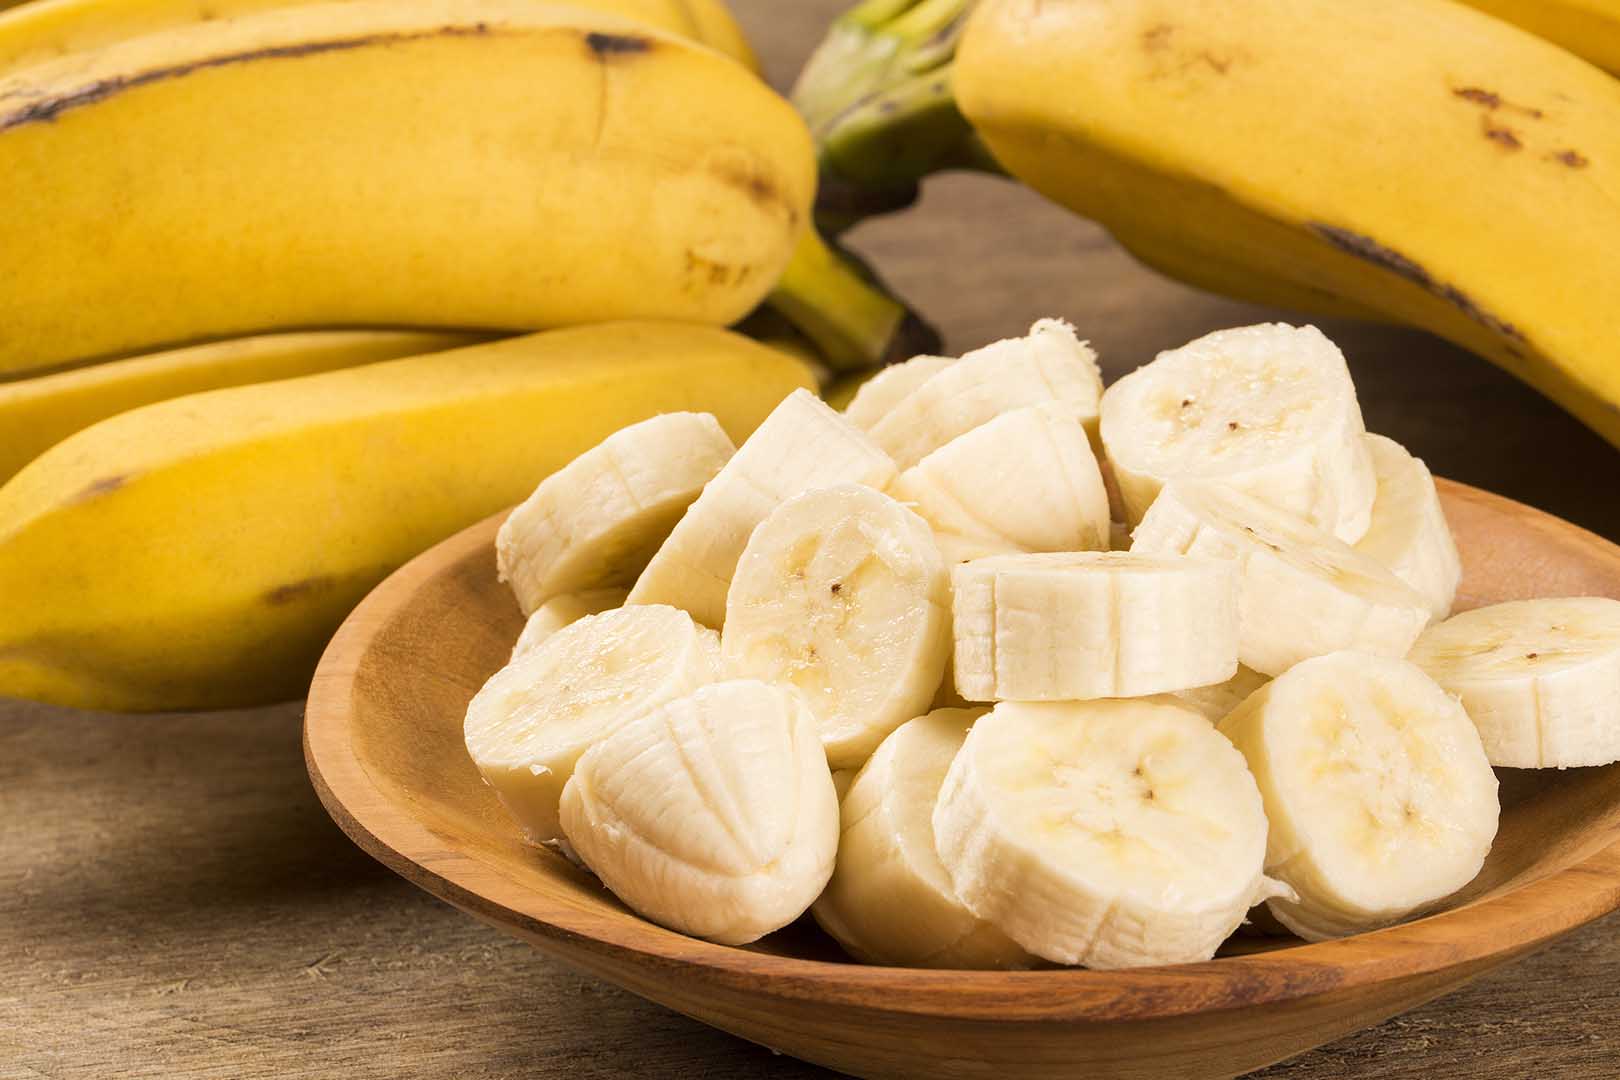 Berikut ini yang bukan merupakan manfaat buah pisang bagi organ pencernaan adalah